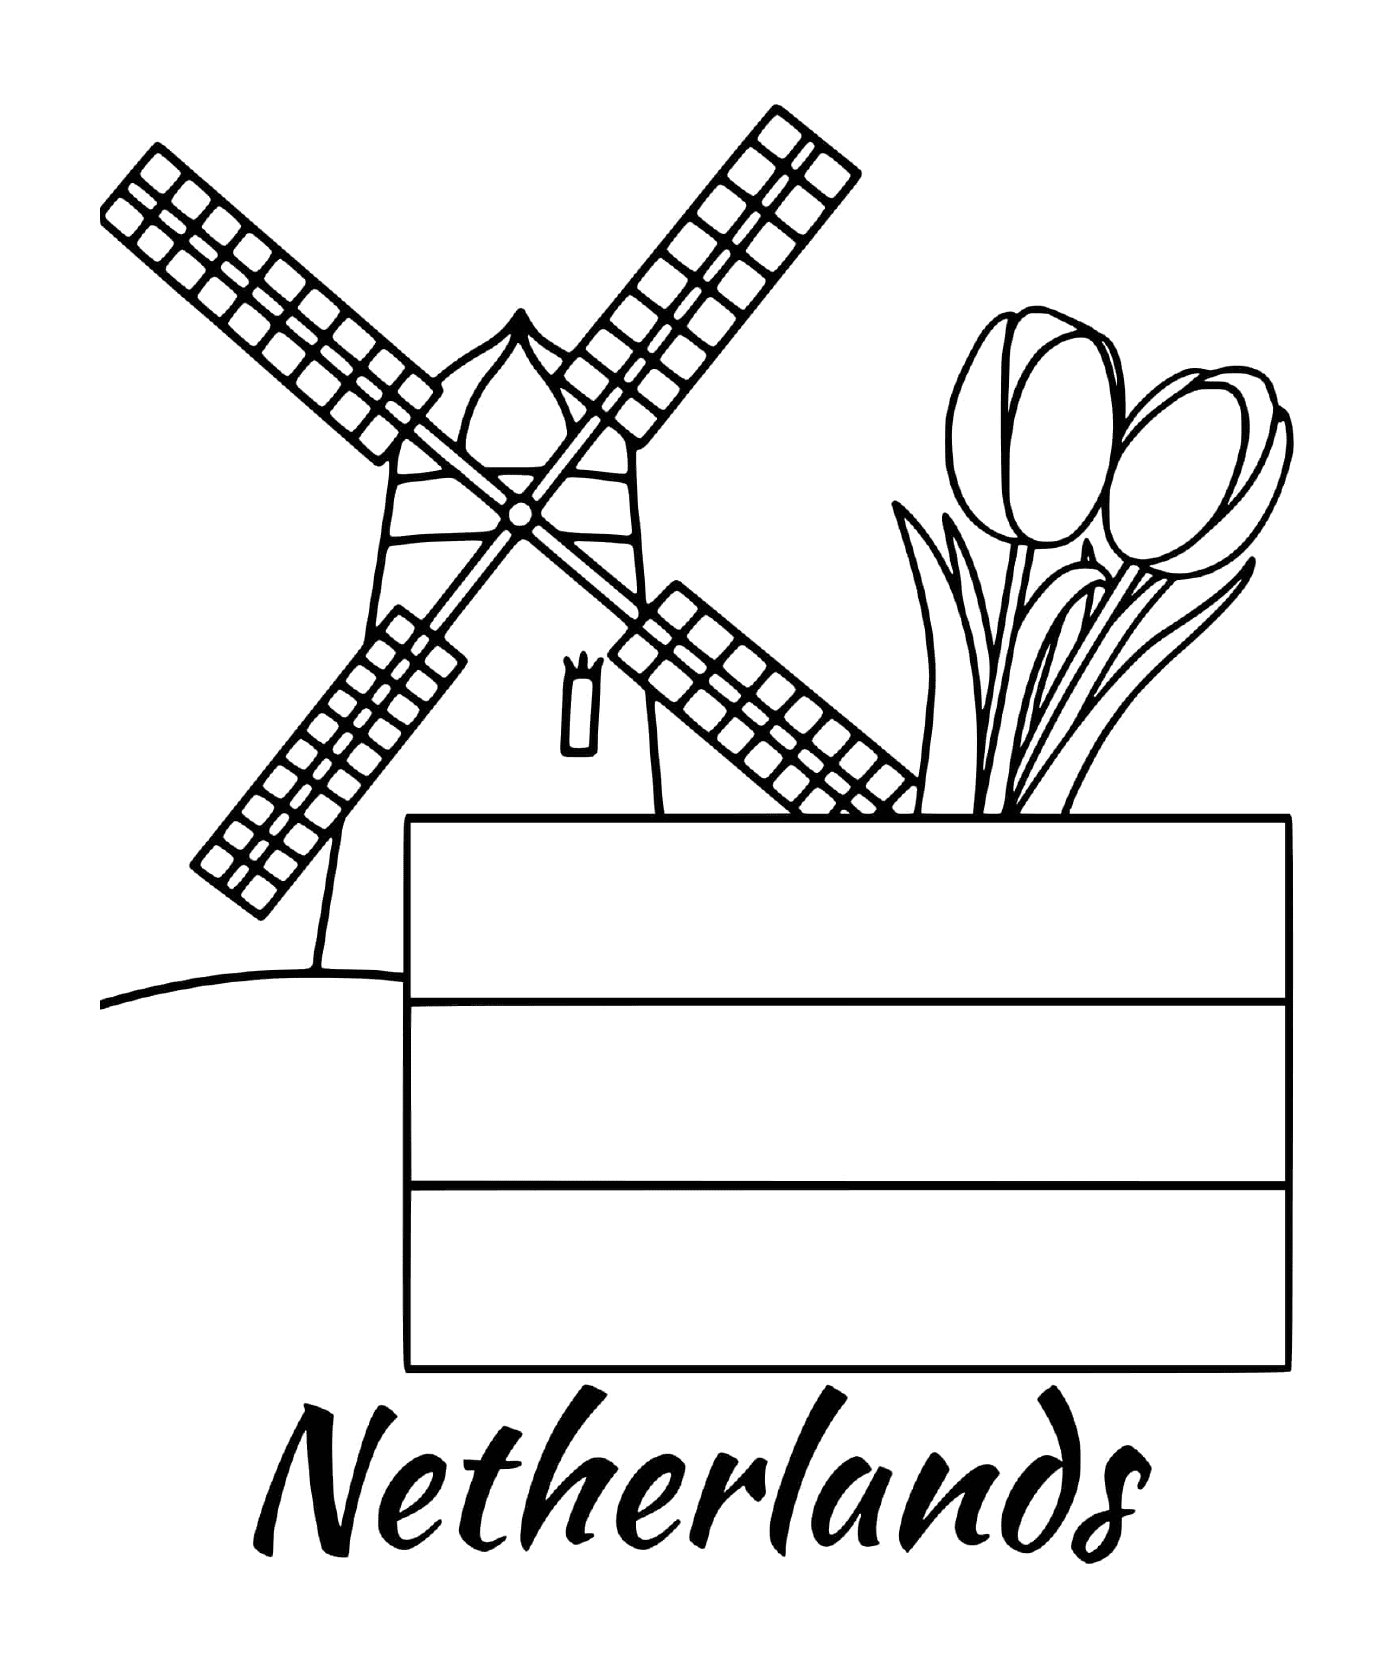  علم هولندي مع طاحونة 